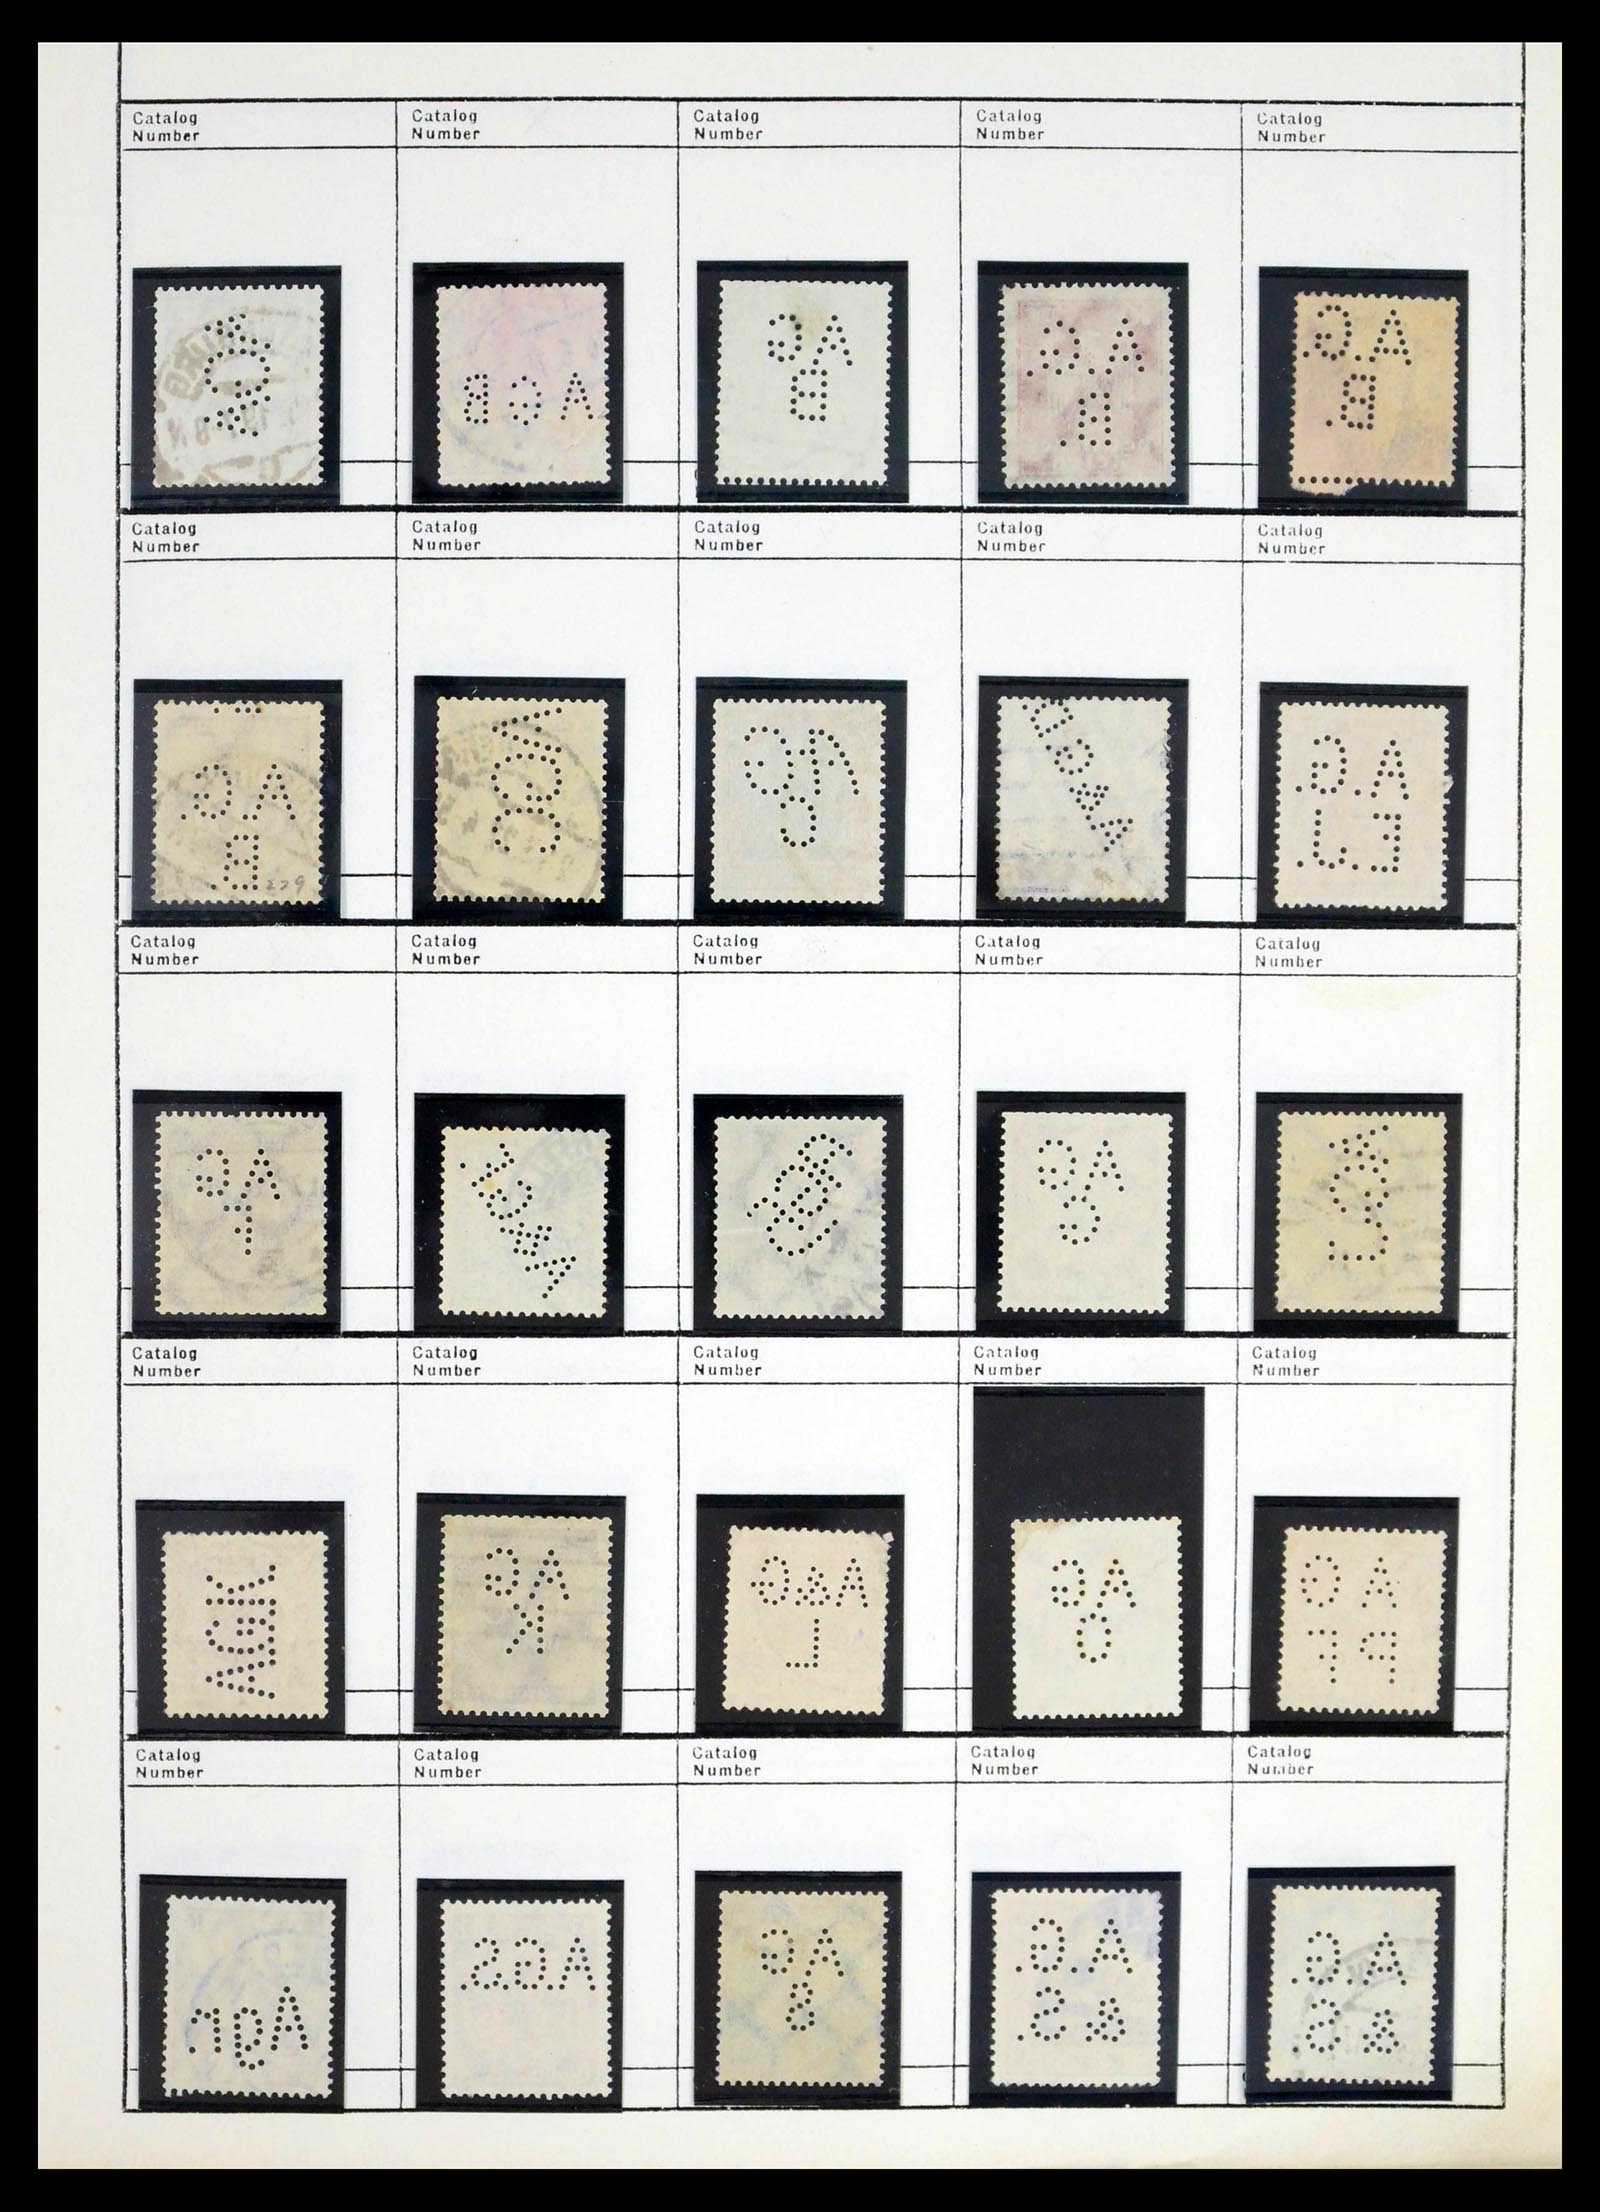 39480 0018 - Stamp collection 39480 German Reich perfins 1880-1955.